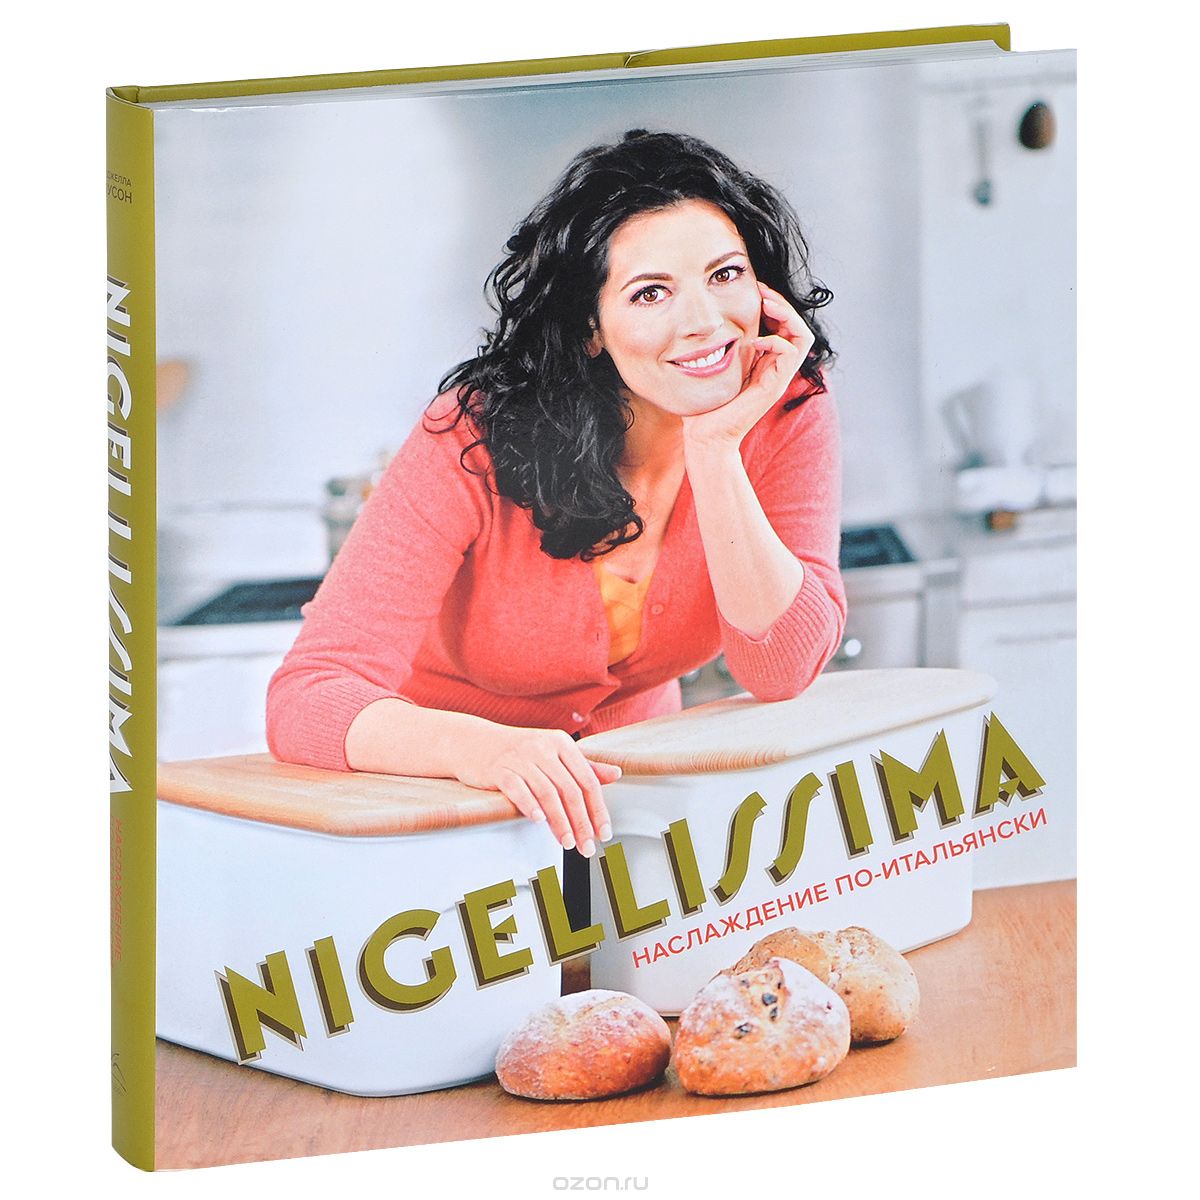 Скачать книгу "Nigellissima. Блестящие итальянские идеи, Найджелла Лоусон"